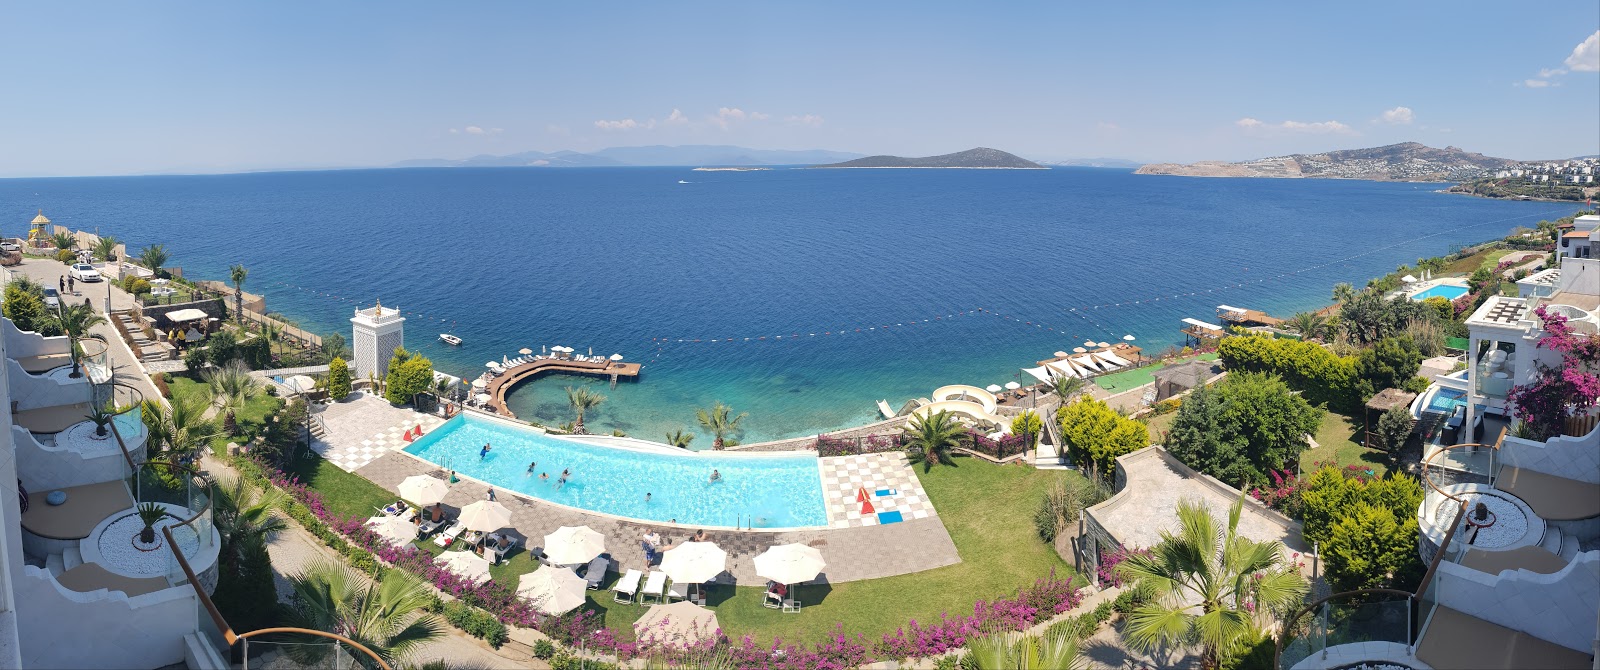 Foto av Bvs Bosphorus Resort med turkos rent vatten yta